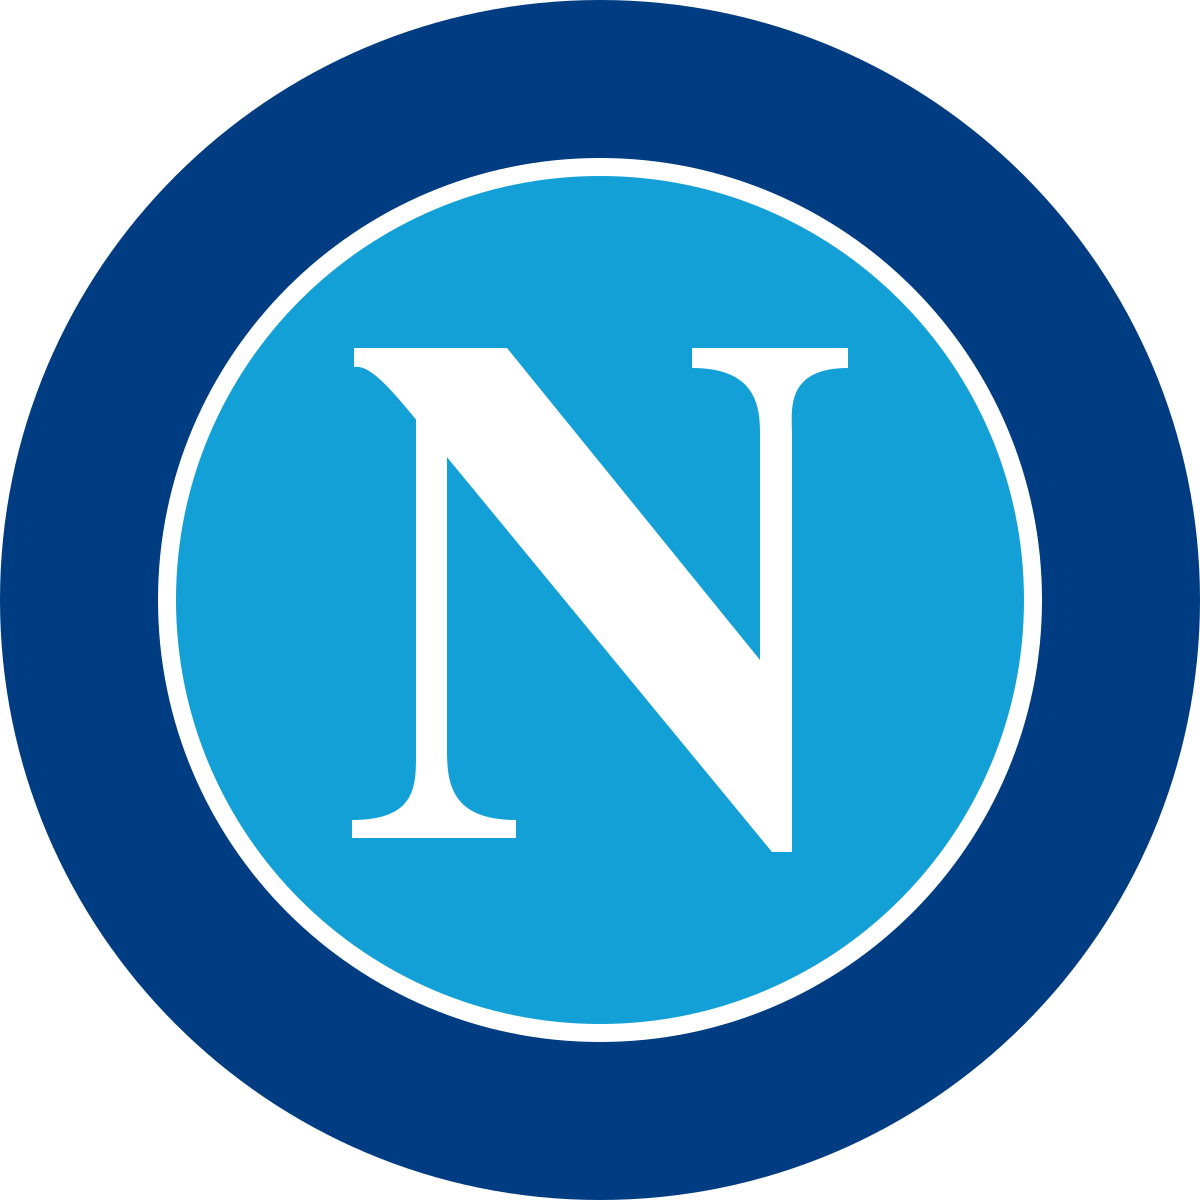 Beharangozó: a Napoli elleni meccs